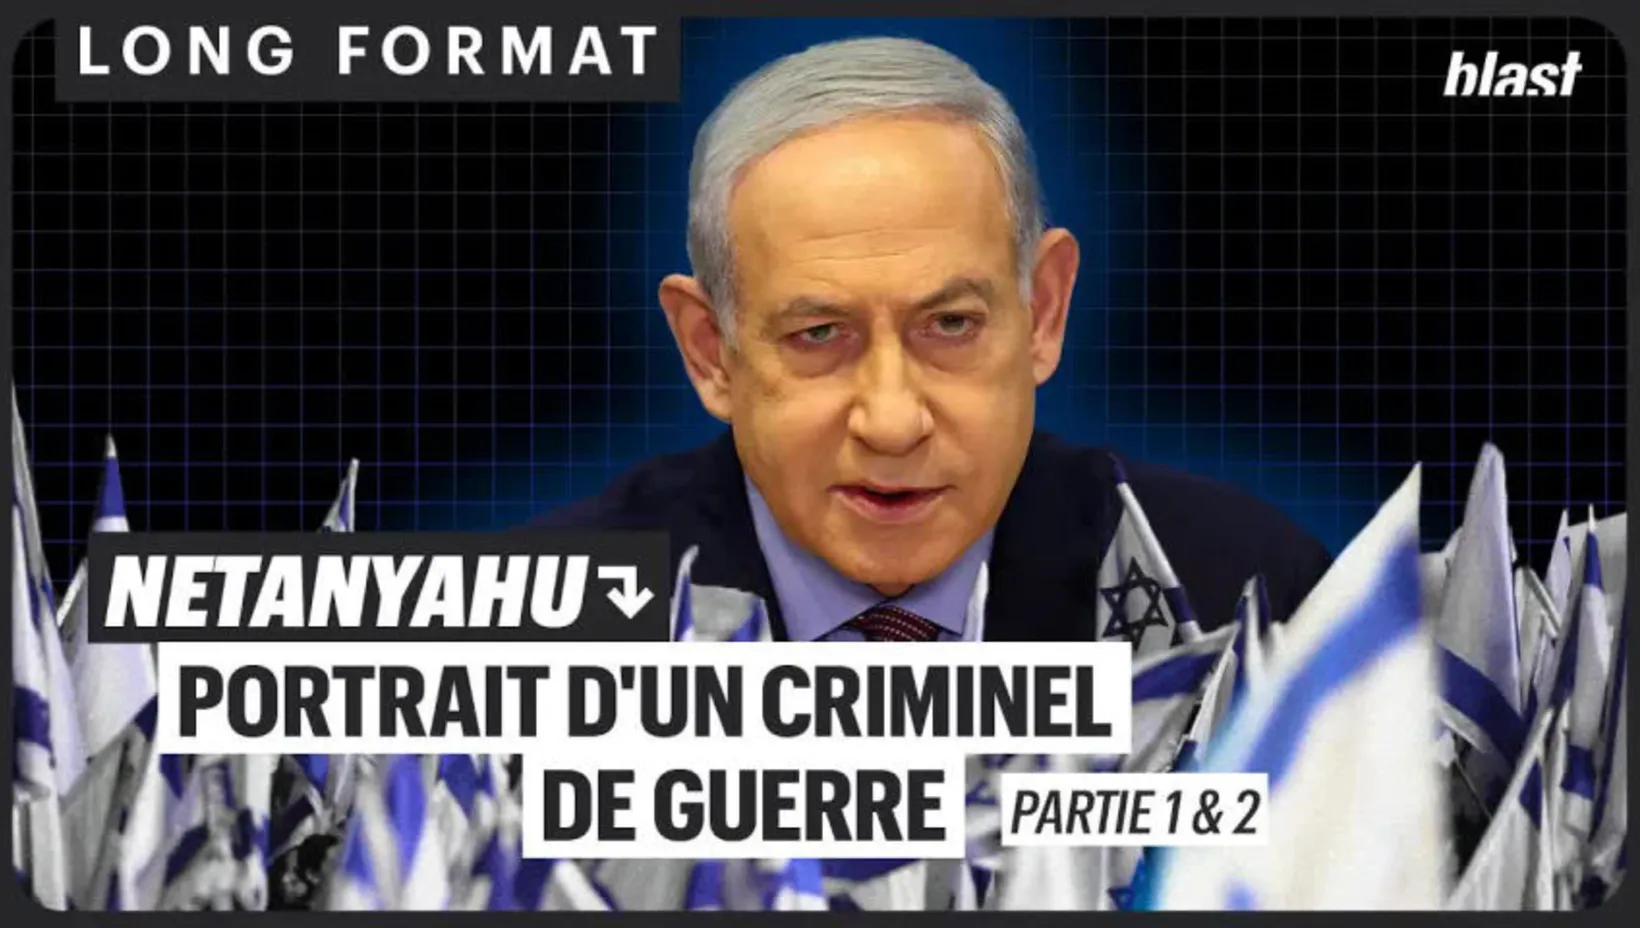 Netanyahu : portrait d'un criminel de guerre (Partie 1 & 2)